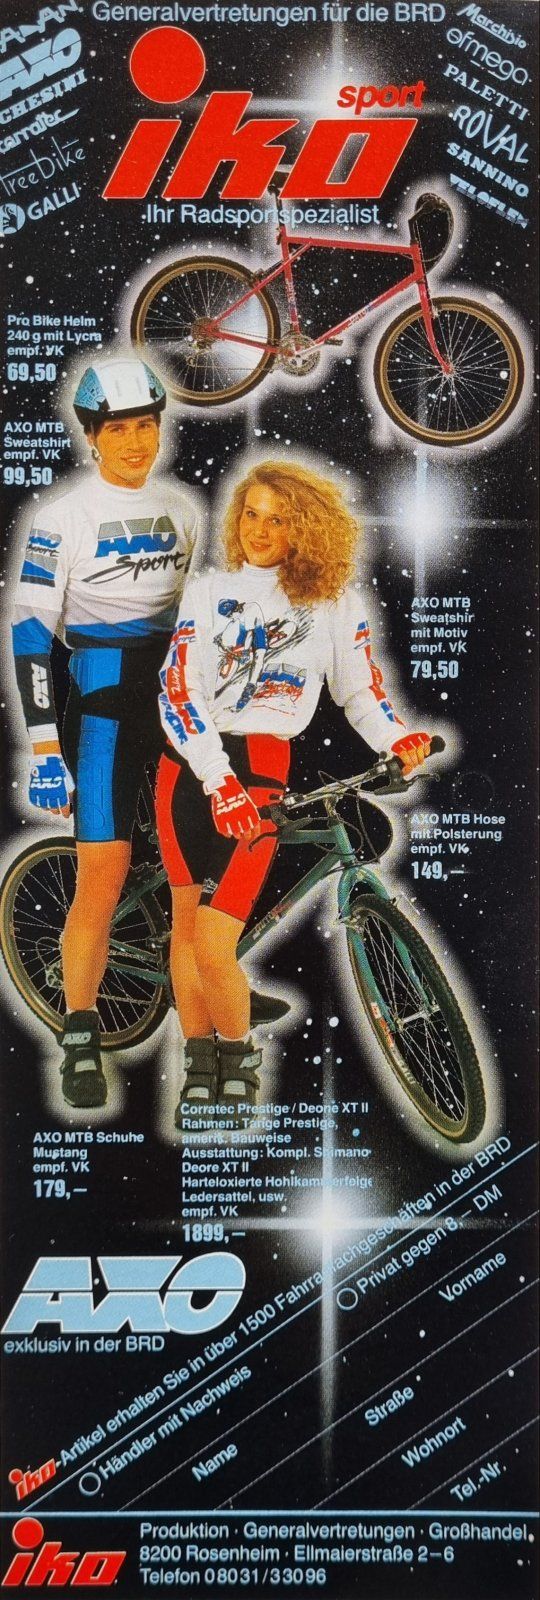 Iko AXO Ad aus Bike 3 1989.jpg